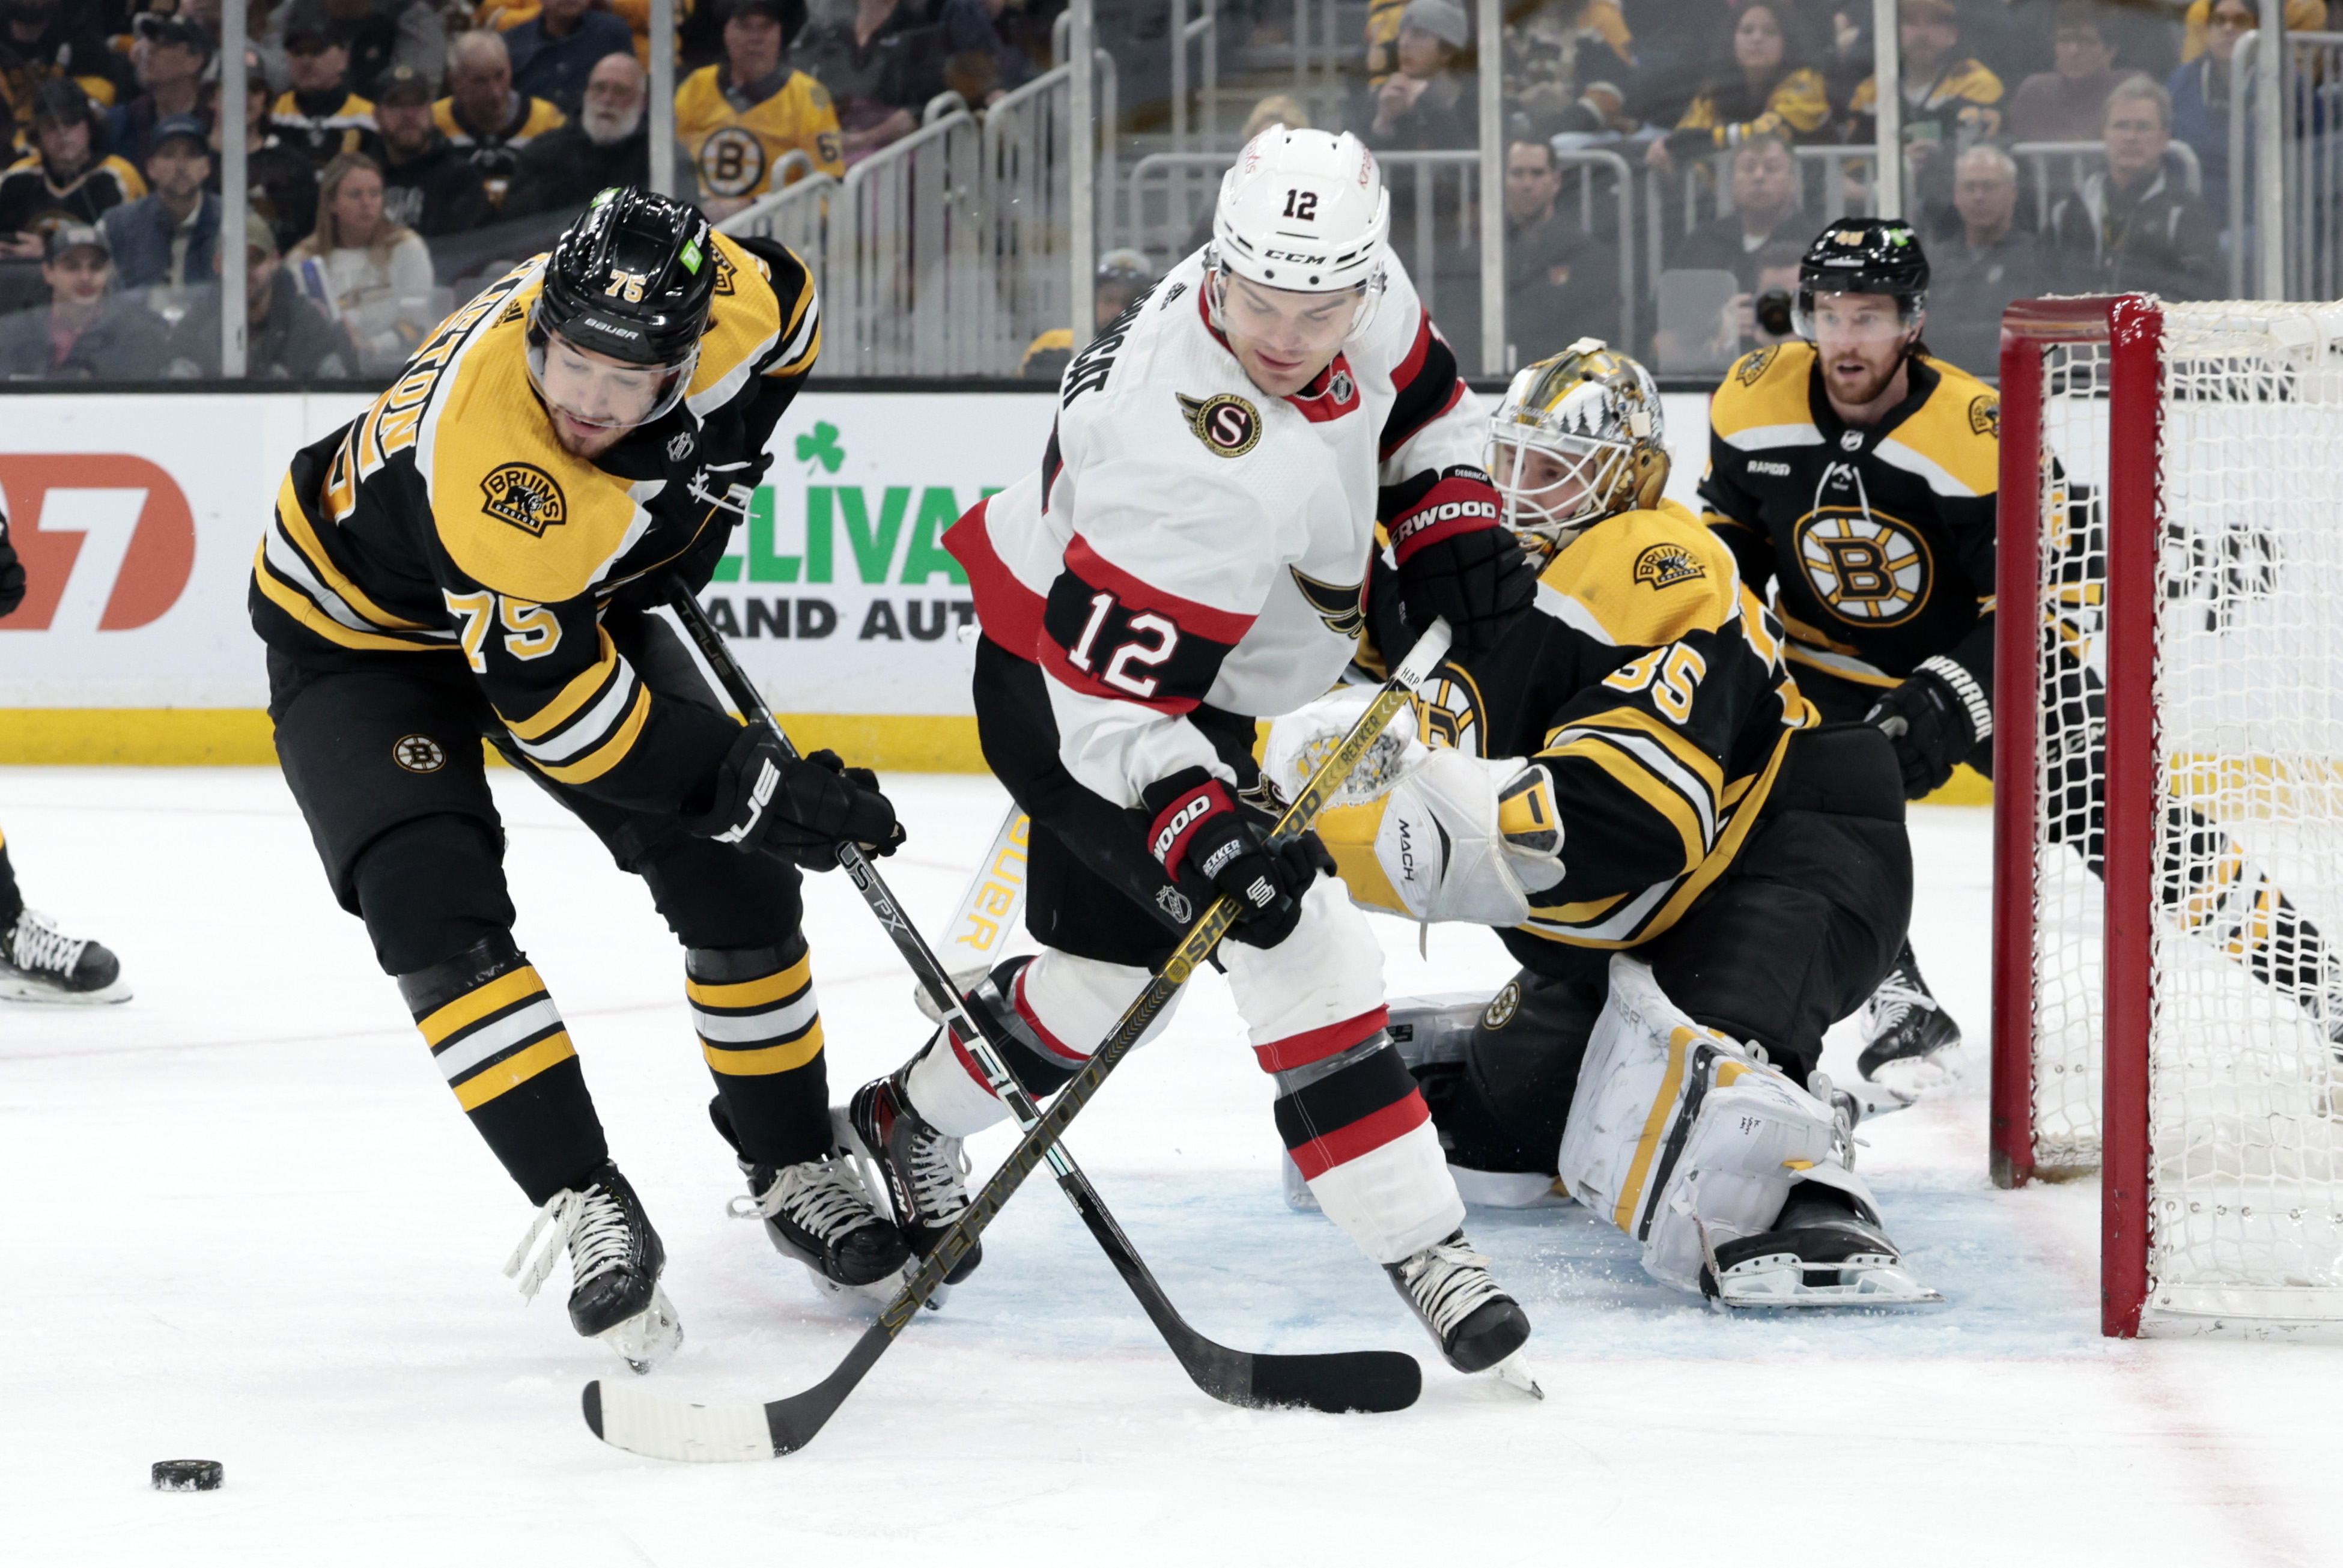 NHL: MAR 21 Senators at Bruins